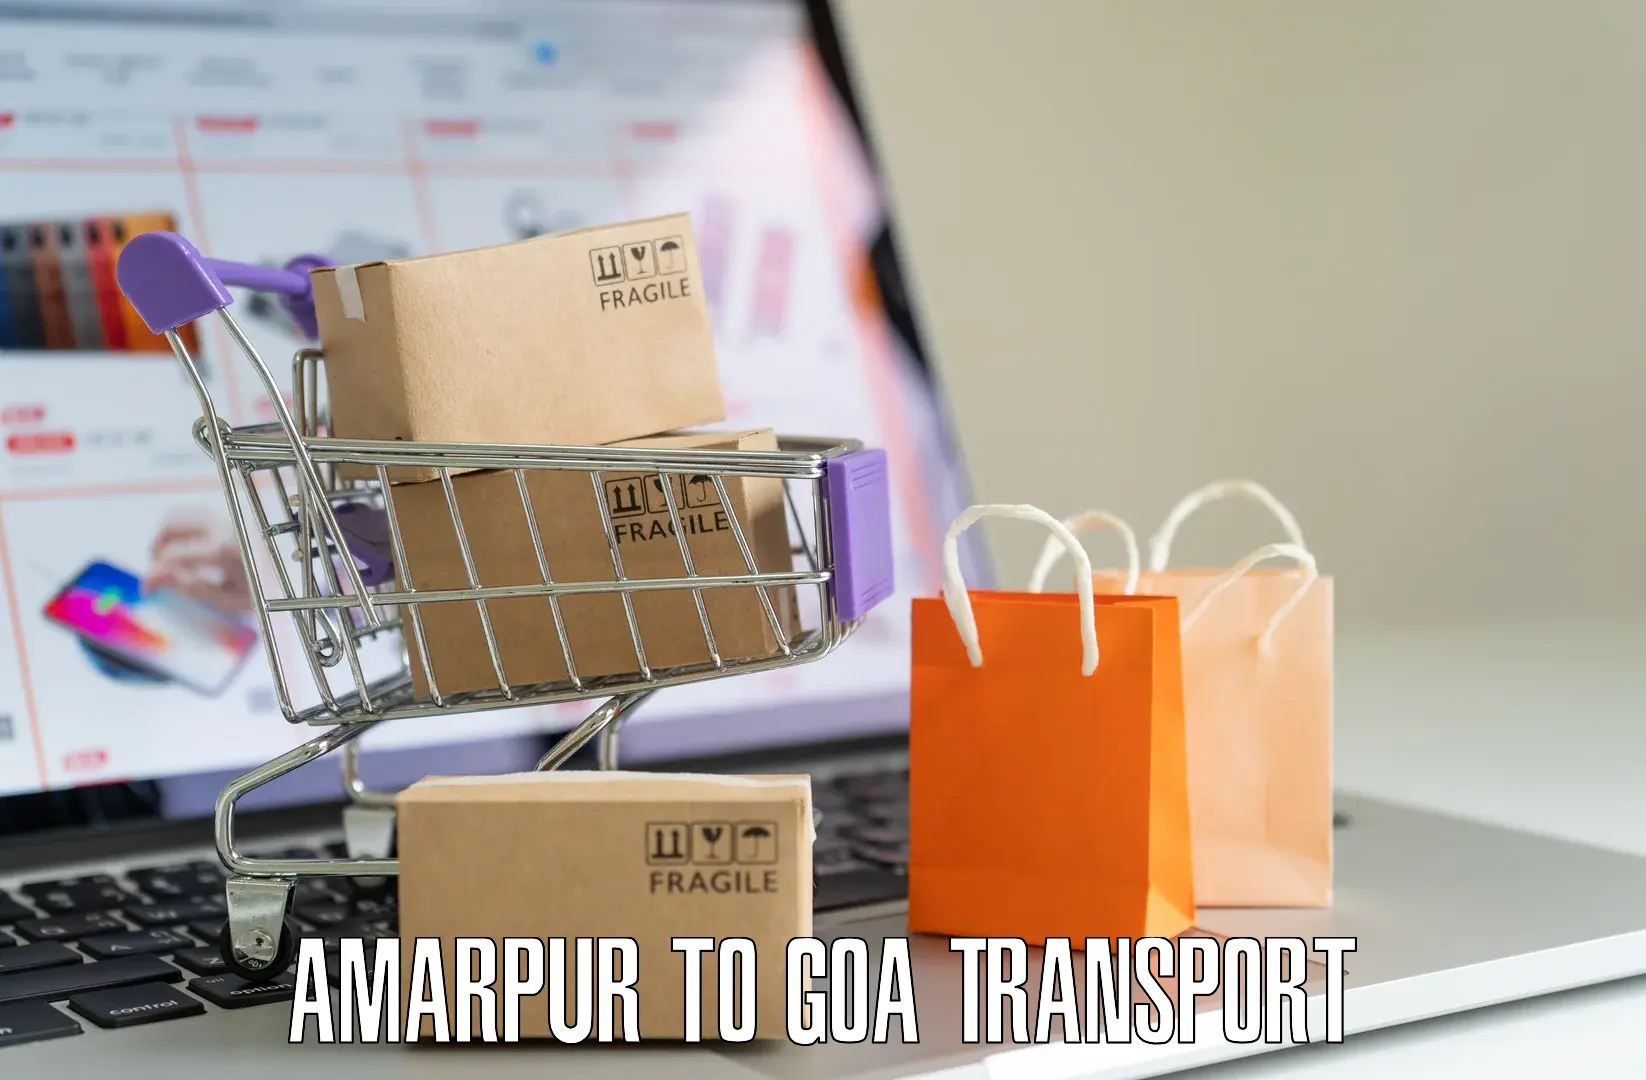 Daily parcel service transport Amarpur to Sanvordem